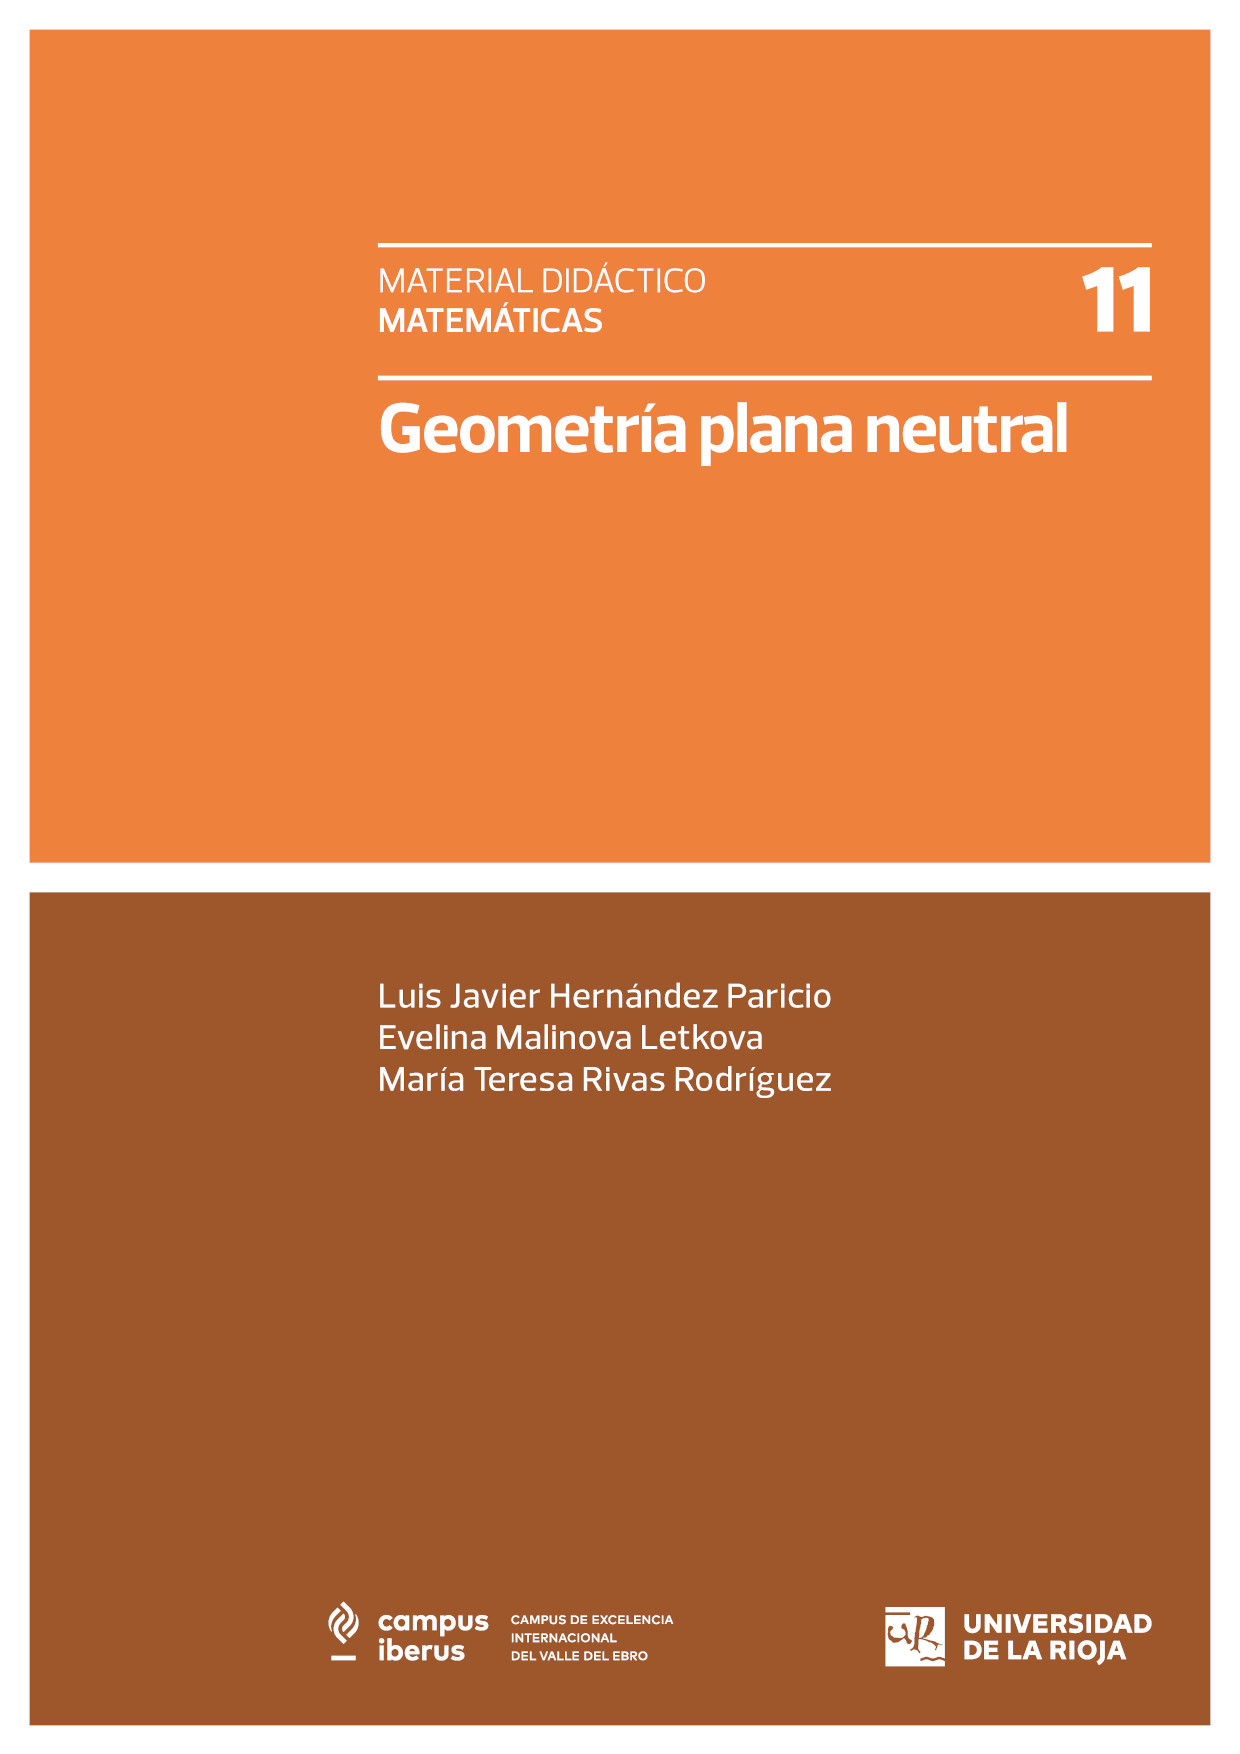 Imagen de portada del libro Geometría plana neutral